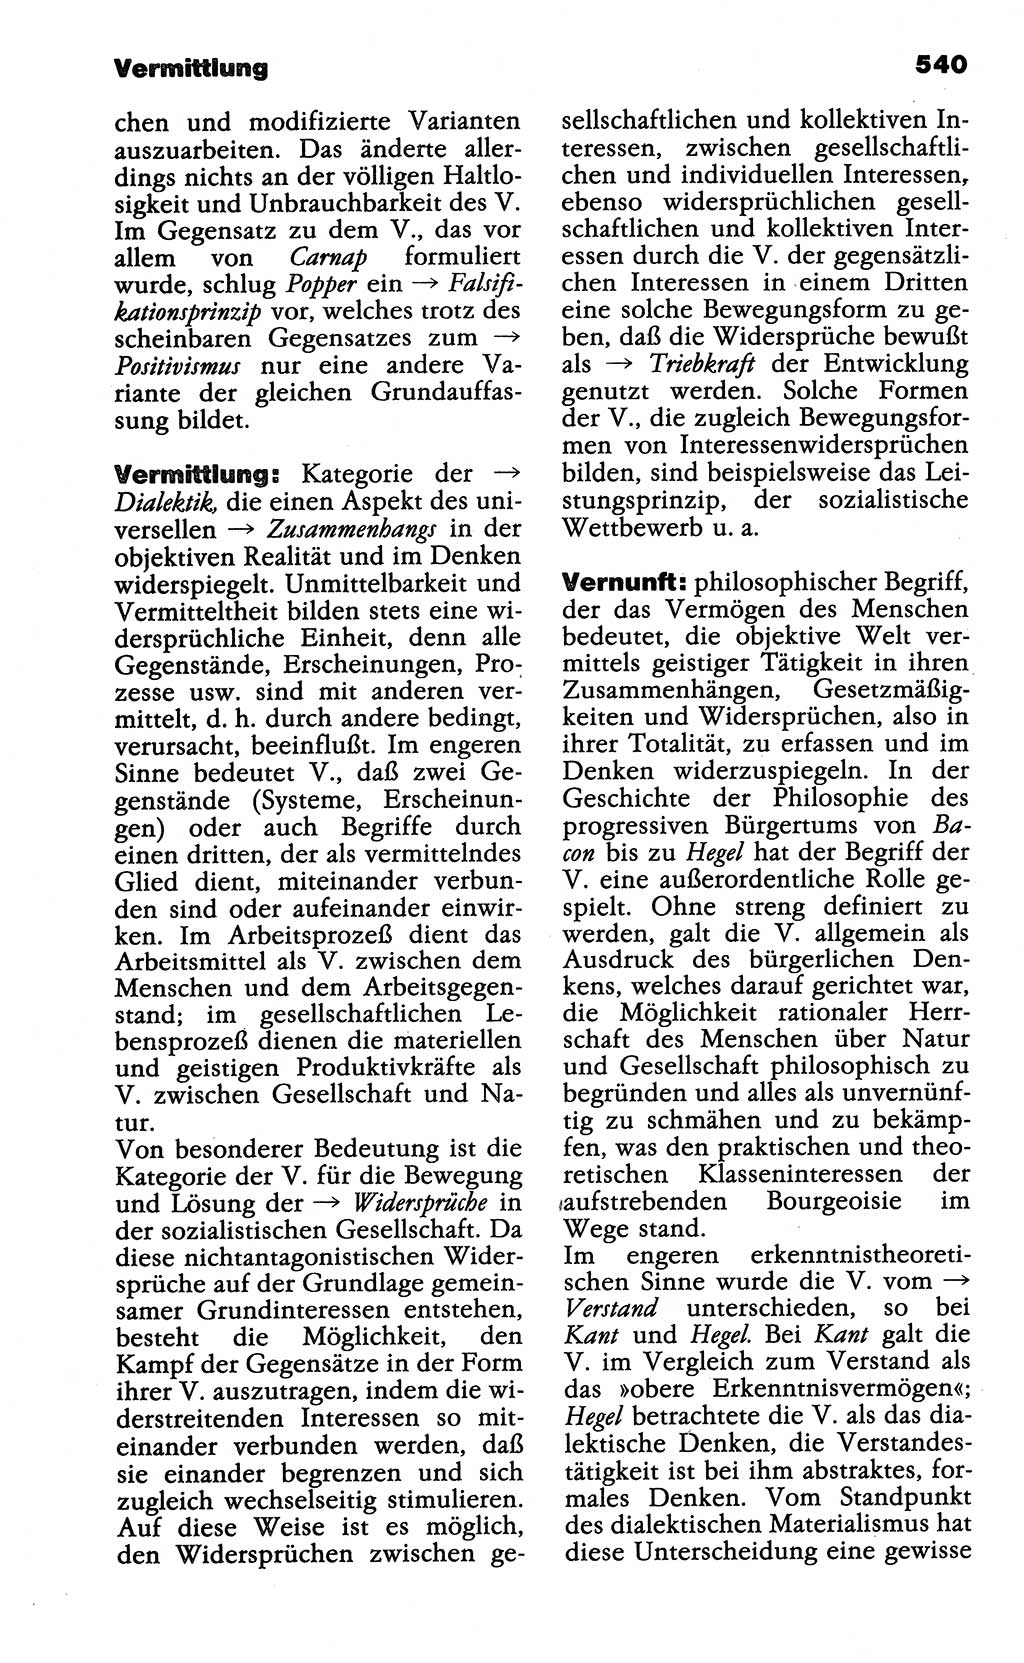 Wörterbuch der marxistisch-leninistischen Philosophie [Deutsche Demokratische Republik (DDR)] 1985, Seite 540 (Wb. ML Phil. DDR 1985, S. 540)